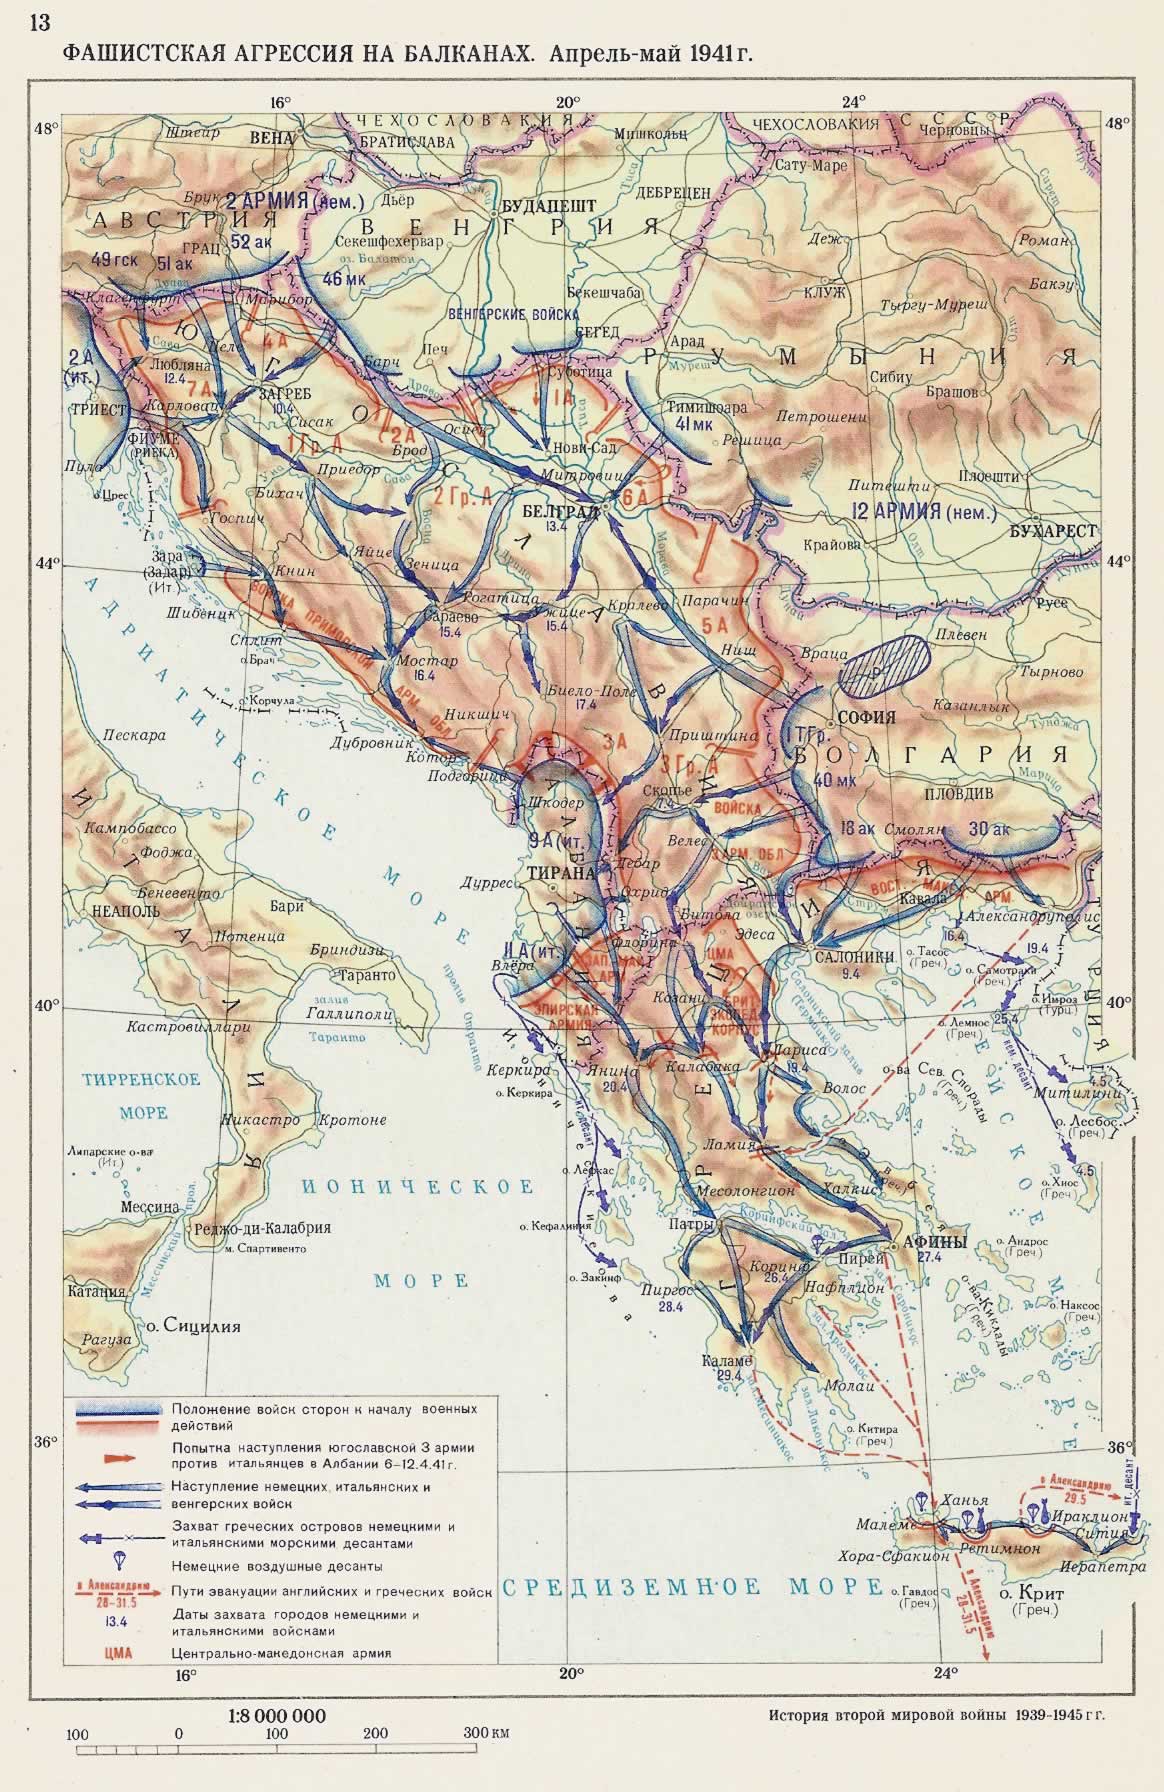 Фашистская агрессия на Балканах. Апрель-май 1941г.